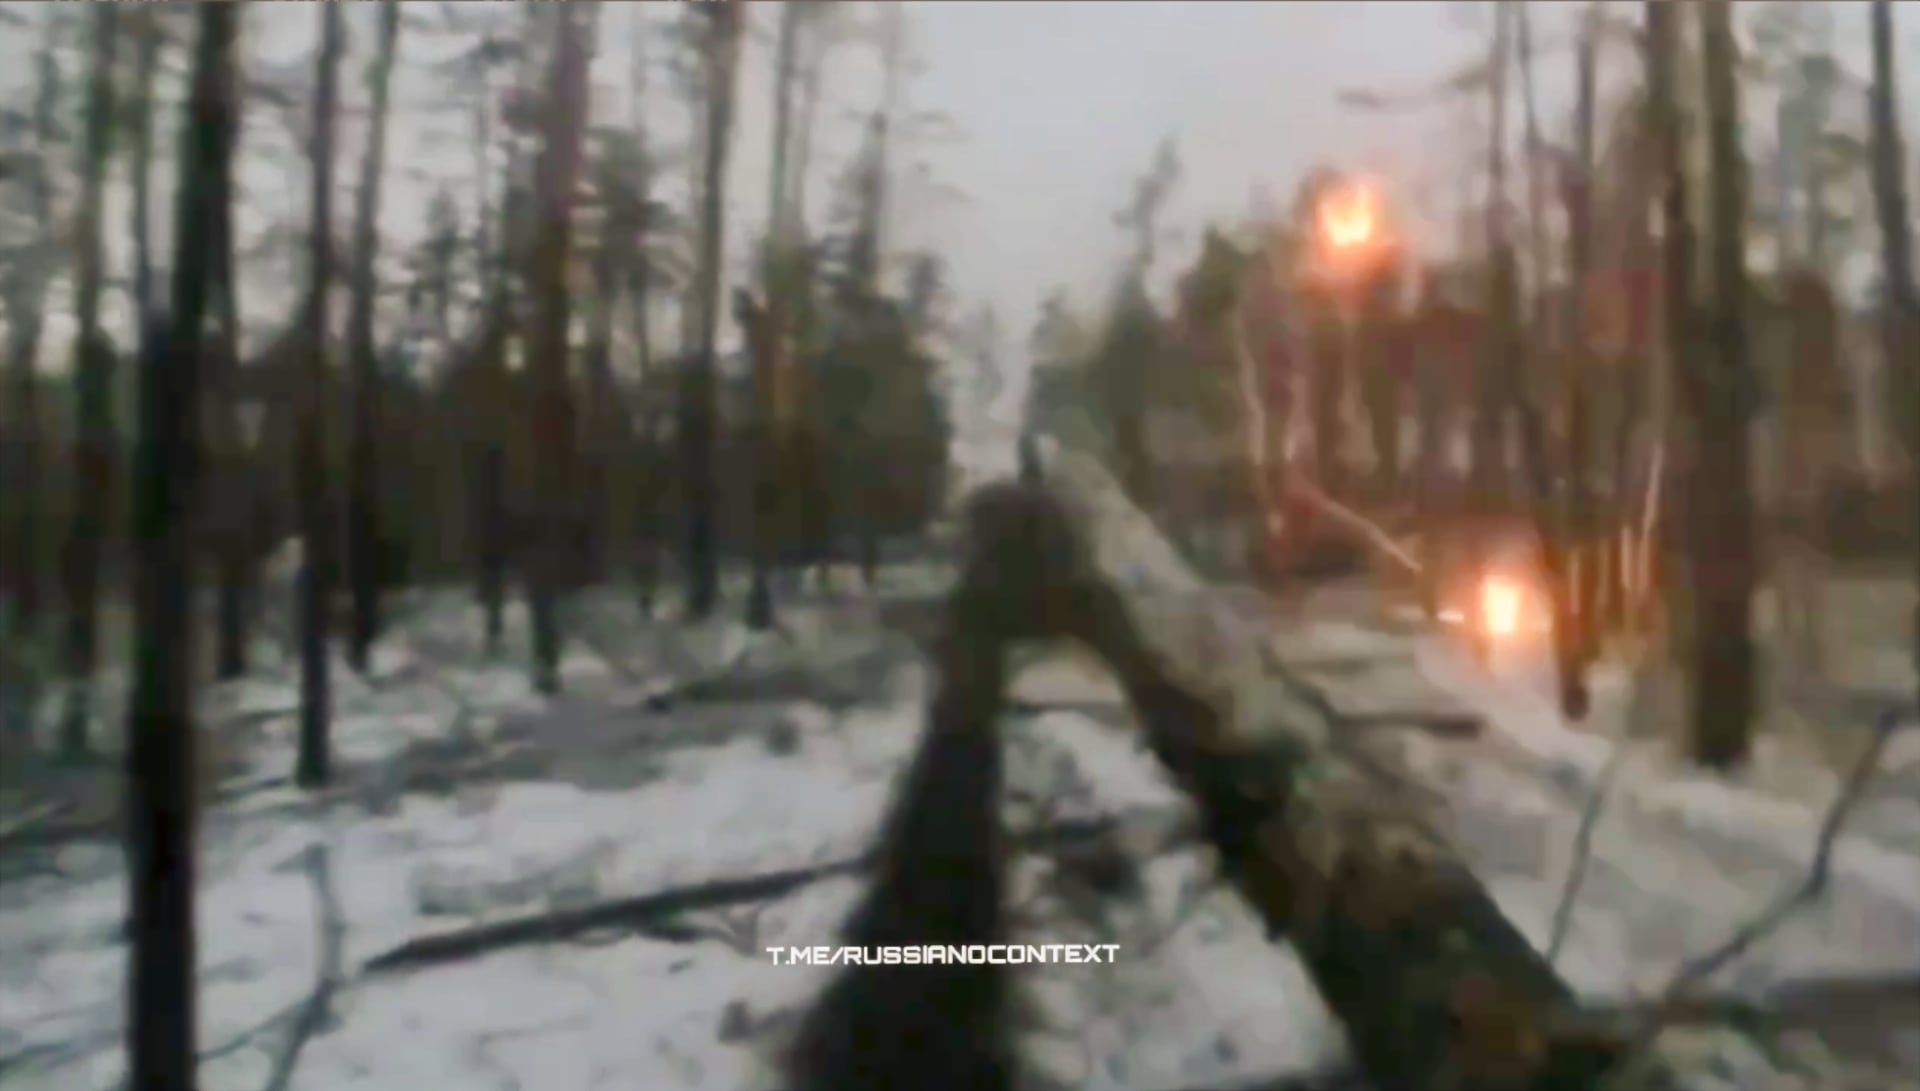 Rosyjski konwój zaatakowany amunicją kasetową: nagranie z kamery okupanta (7 minut wideo)